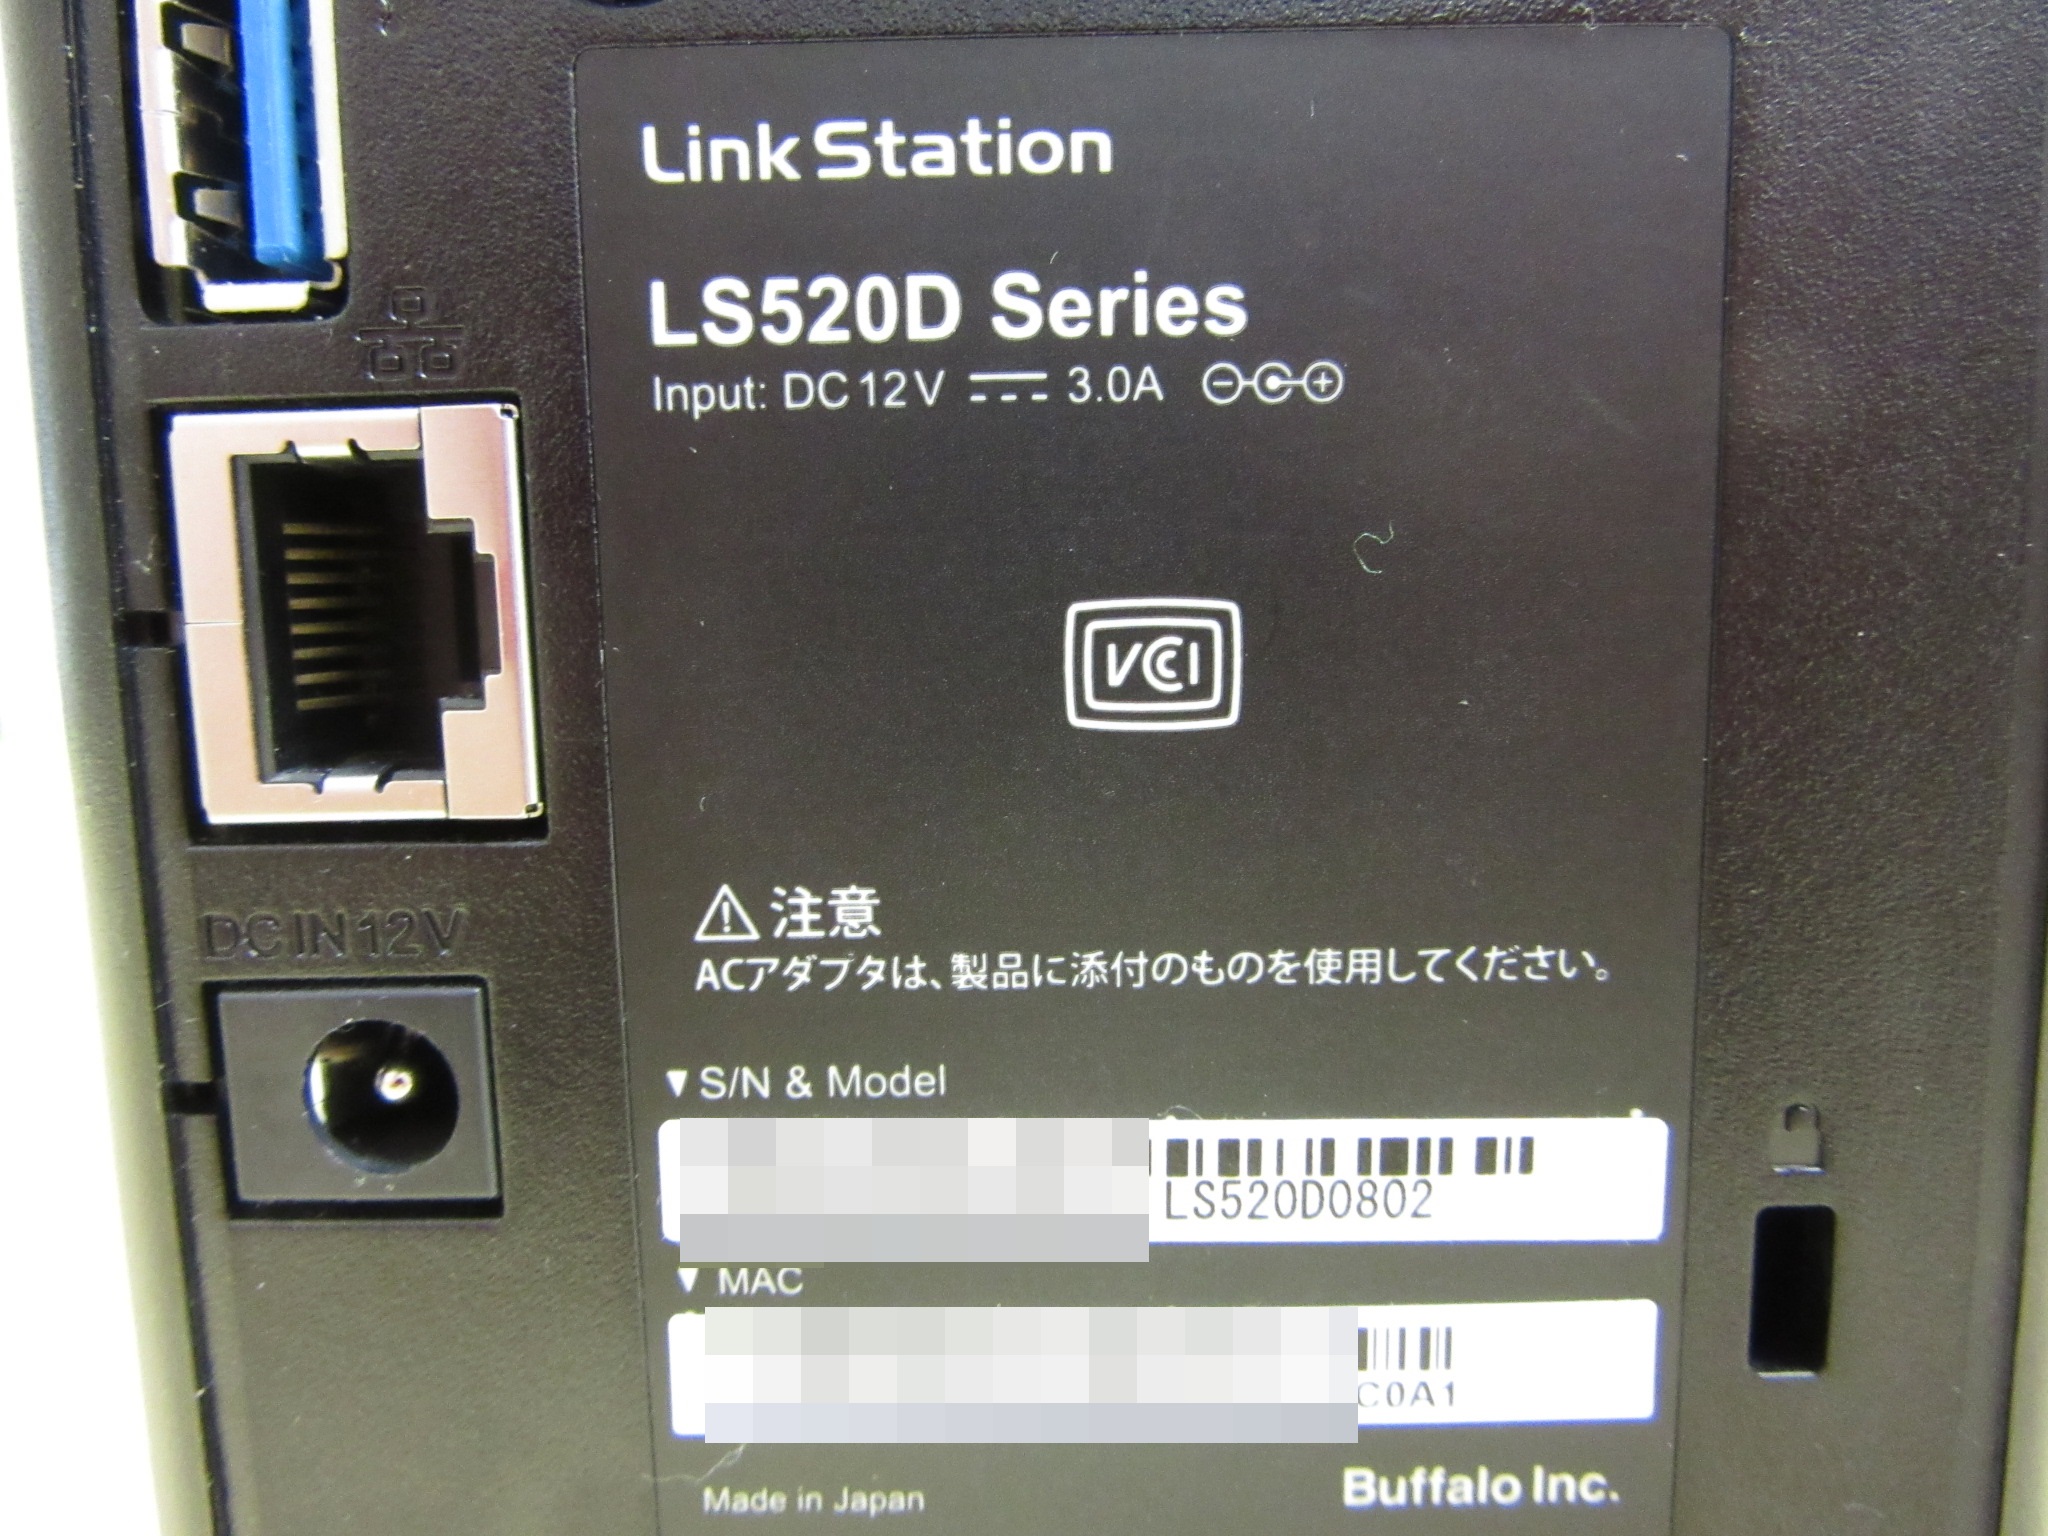 型番はLS520D0802